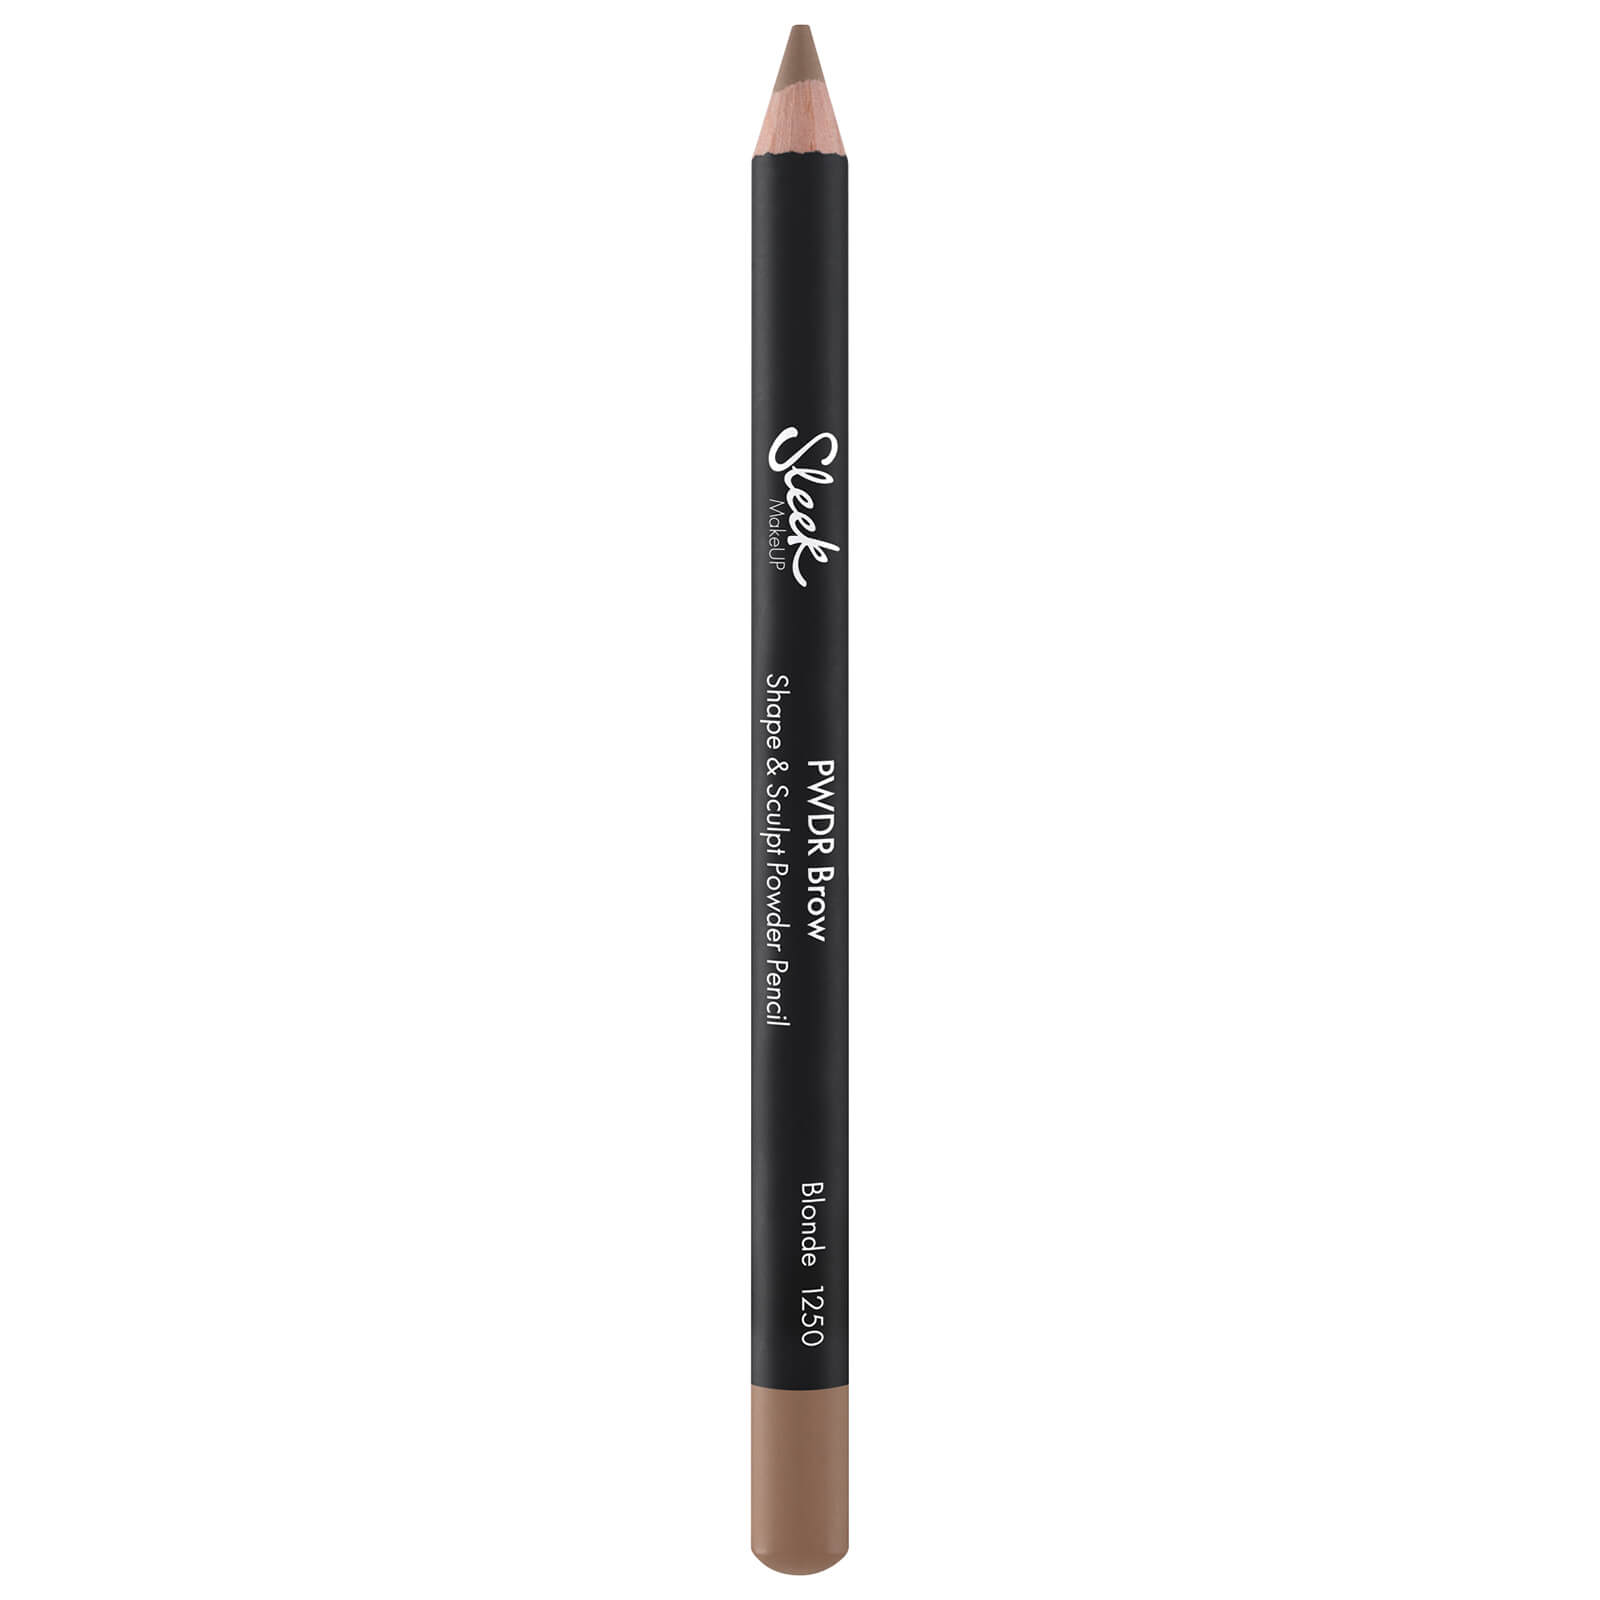 Карандаш для бровей Sleek MakeUP Powder Brow Pencil (различные оттенки) - Blonde